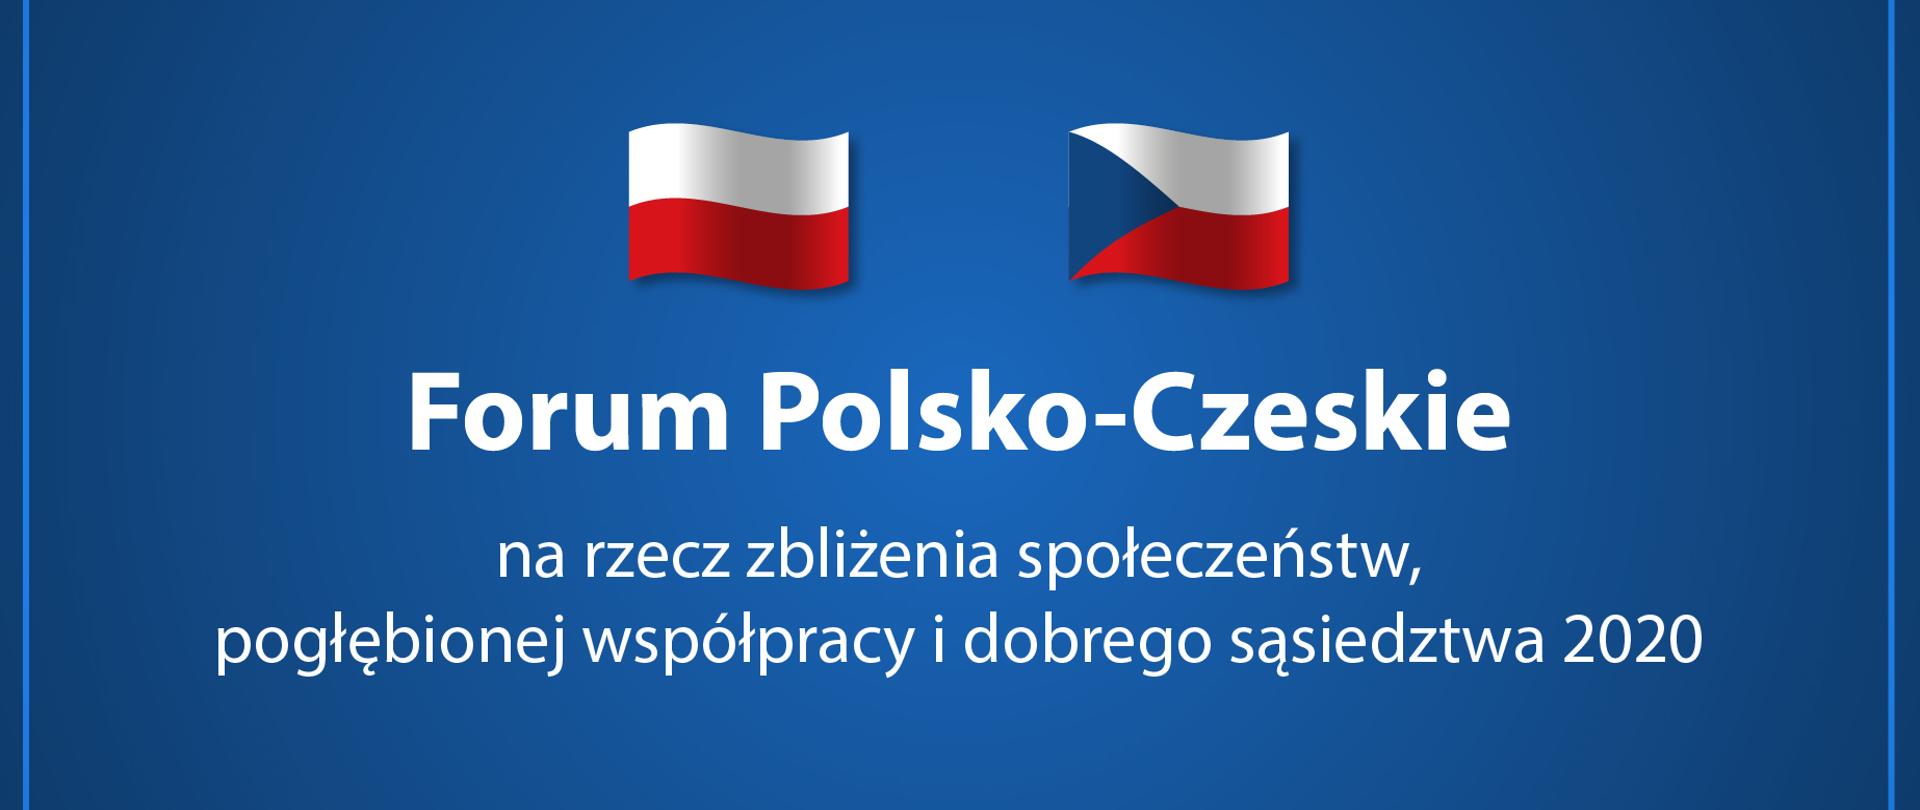 Forum polsko czeskie1920x810